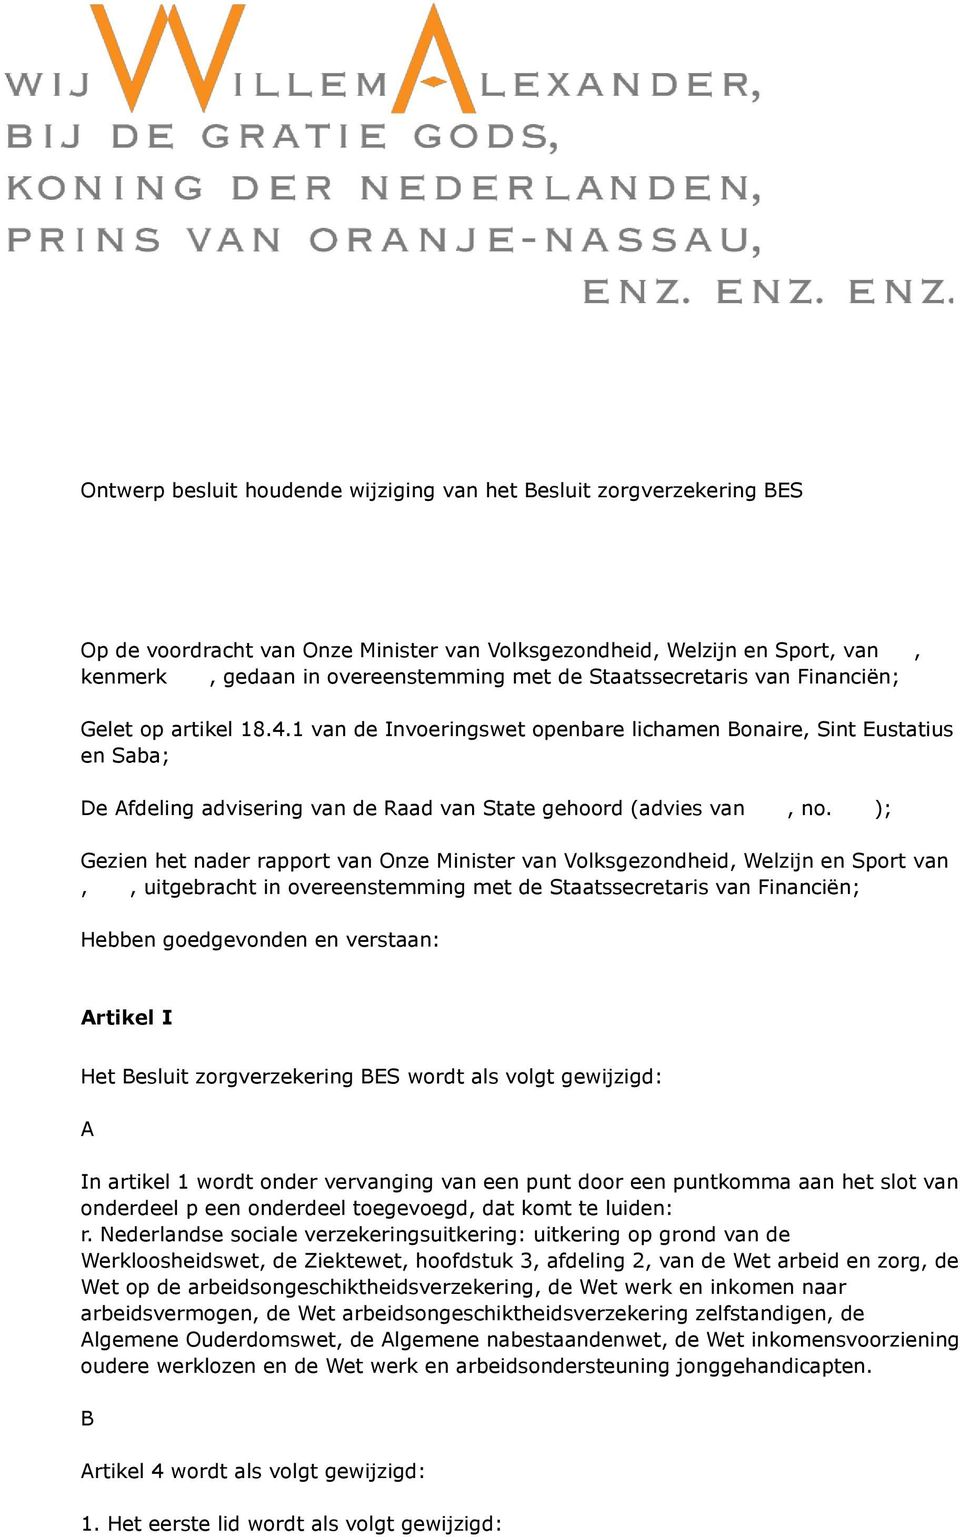 ); Gezien het nader rapport van Onze Minister van Volksgezondheid, Welzijn en Sport van,, uitgebracht in overeenstemming met de Staatssecretaris van Financiën; Hebben goedgevonden en verstaan: